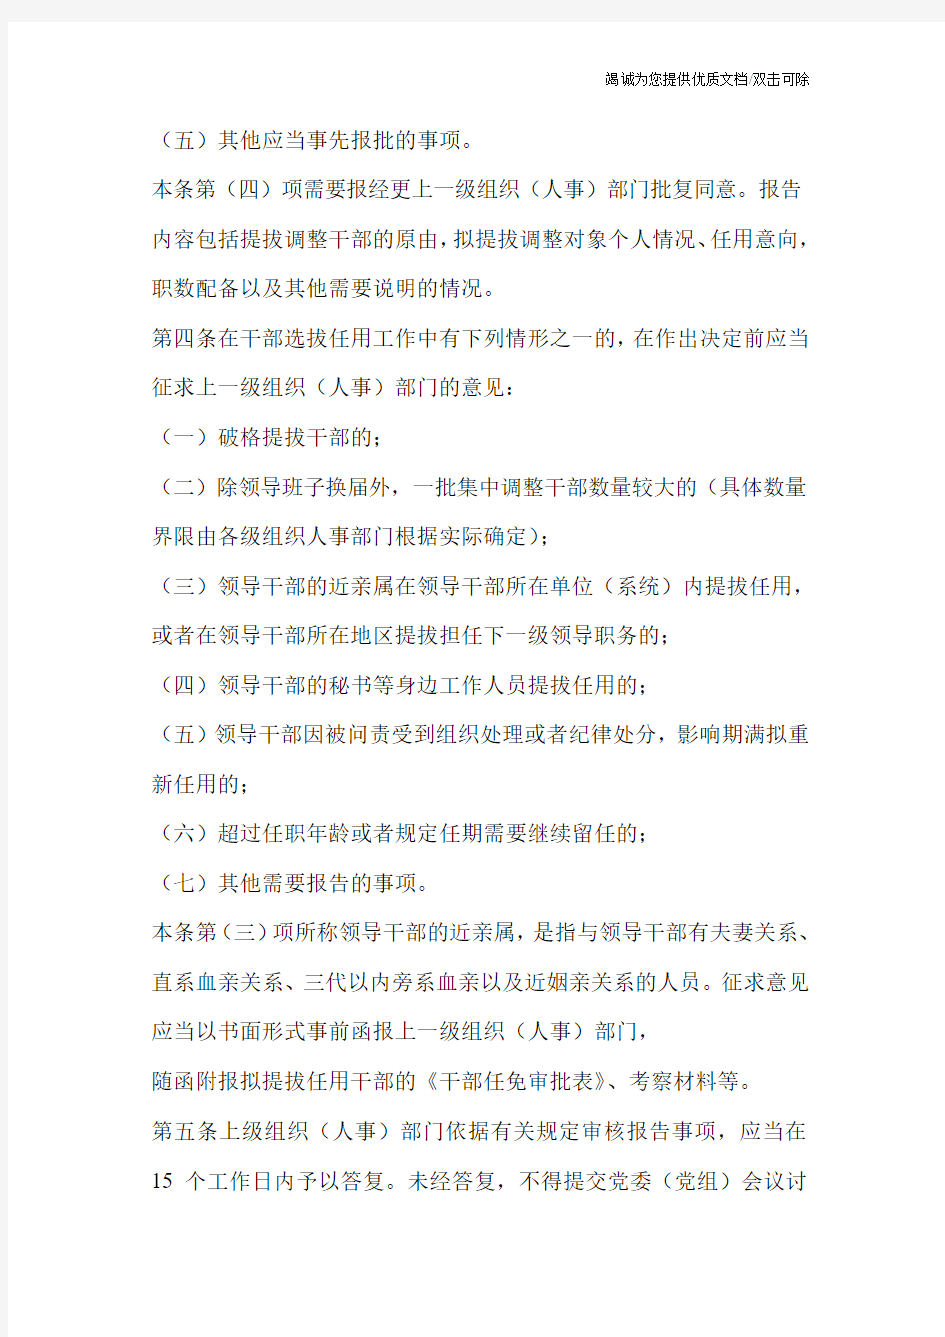 江苏省党政领导干部选拔任用工作有关事项报告办法(试行)